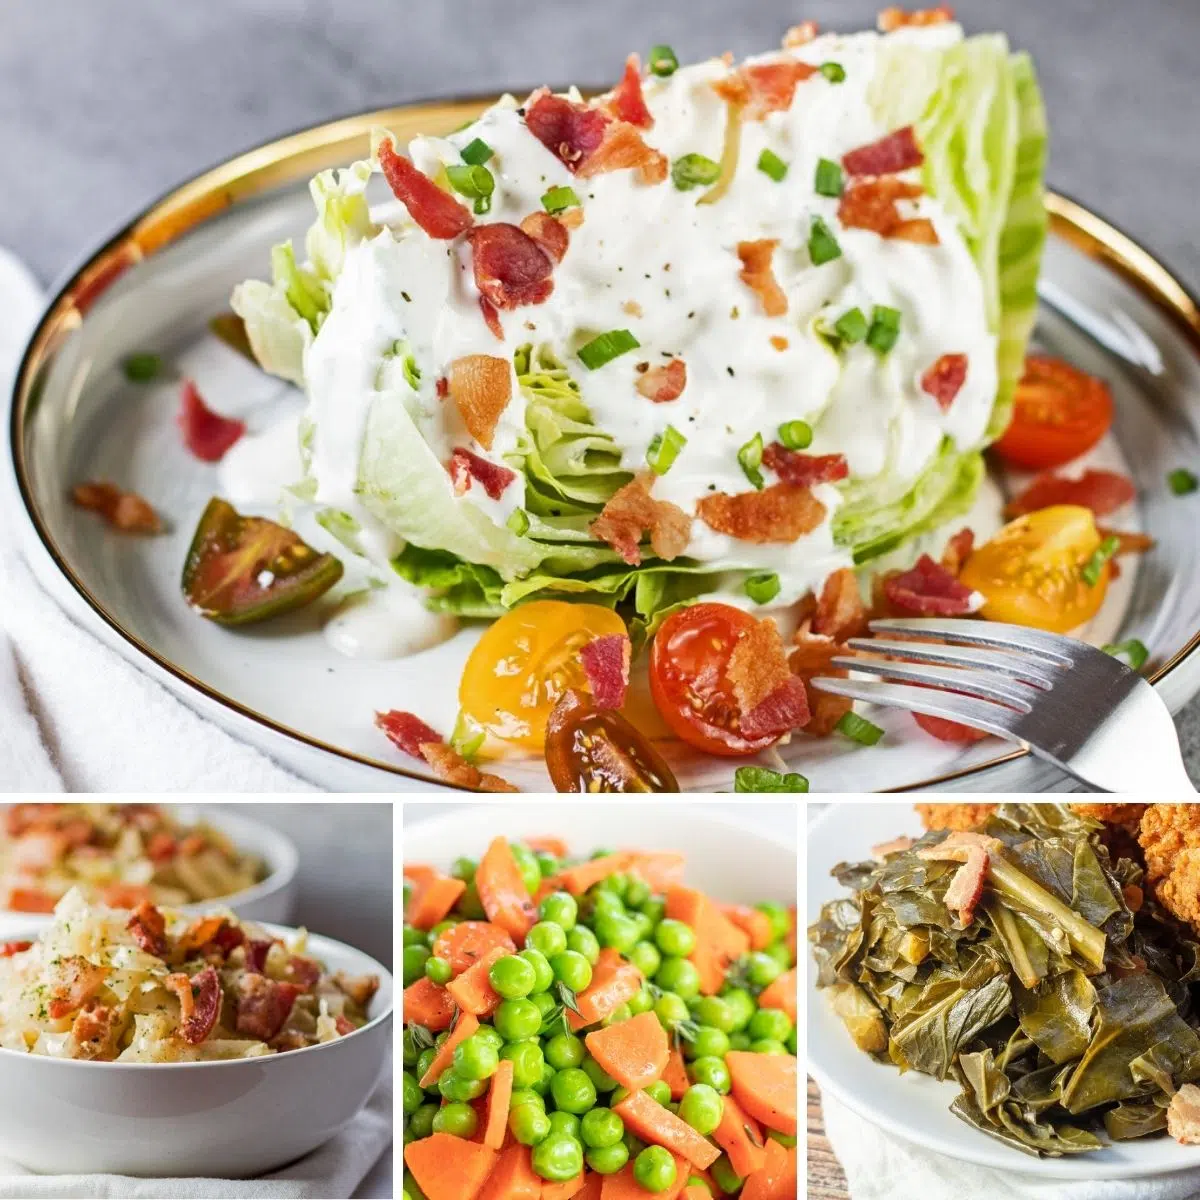 Bedste grøntsags tilbehør til at servere til ethvert måltid som vist med disse 4 fremhævede opskrifter i et collagebillede.